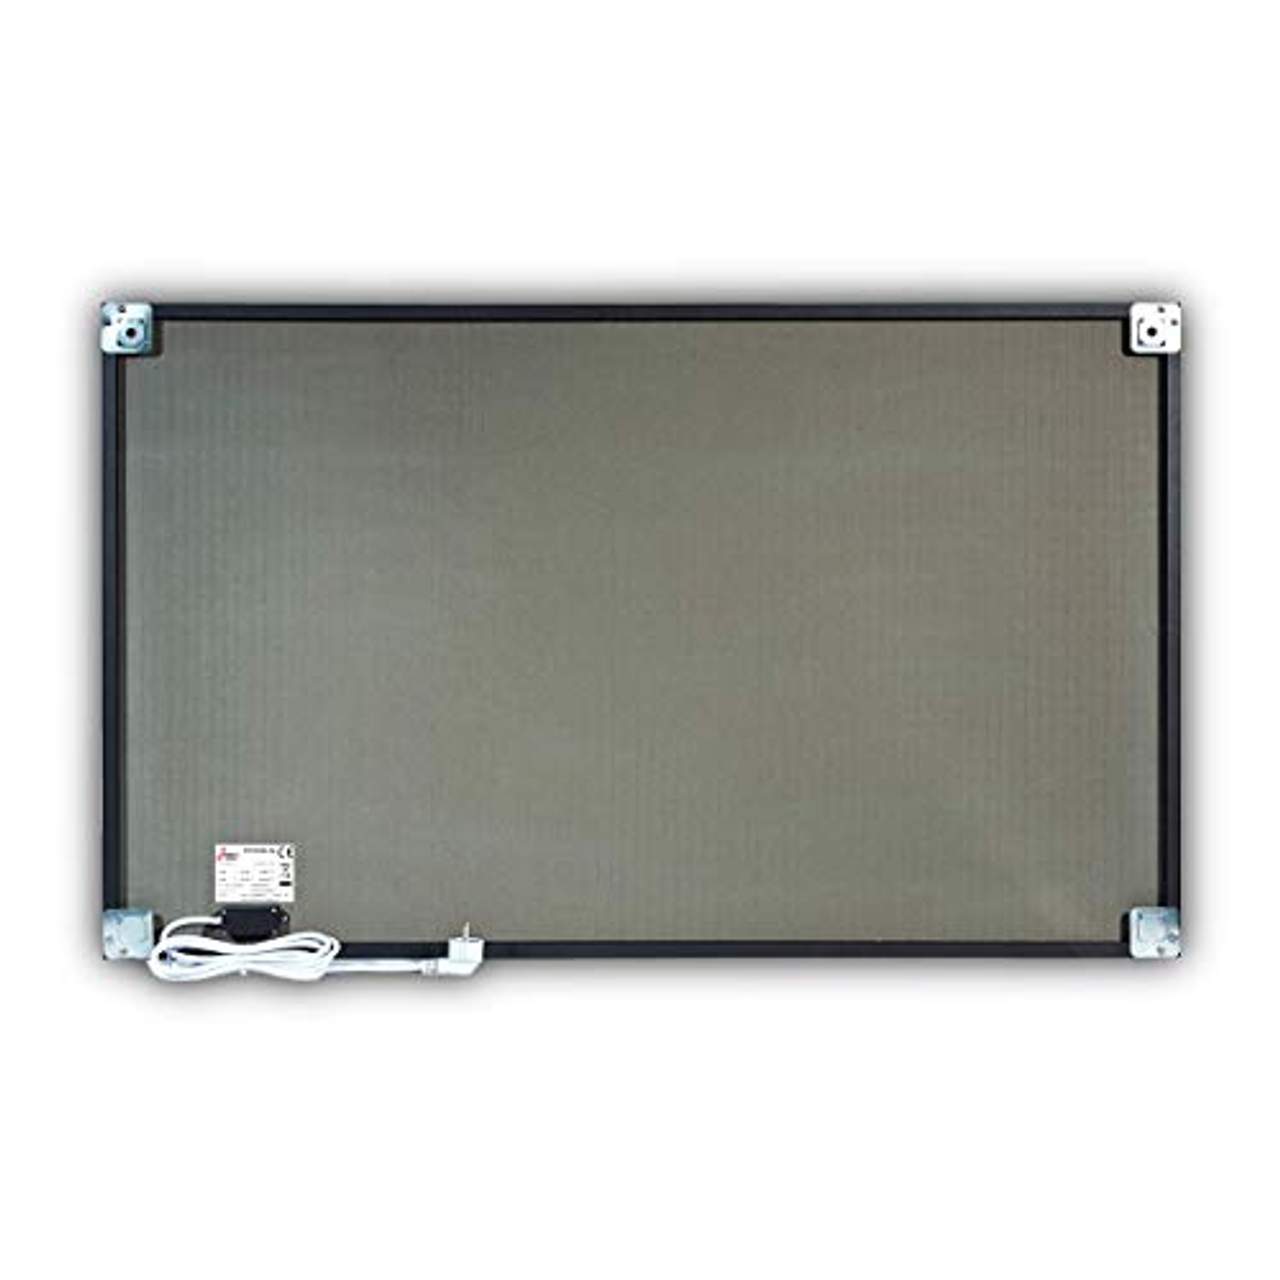 STEINFELD Heizsysteme Glas Bild Infrarotheizung 750W